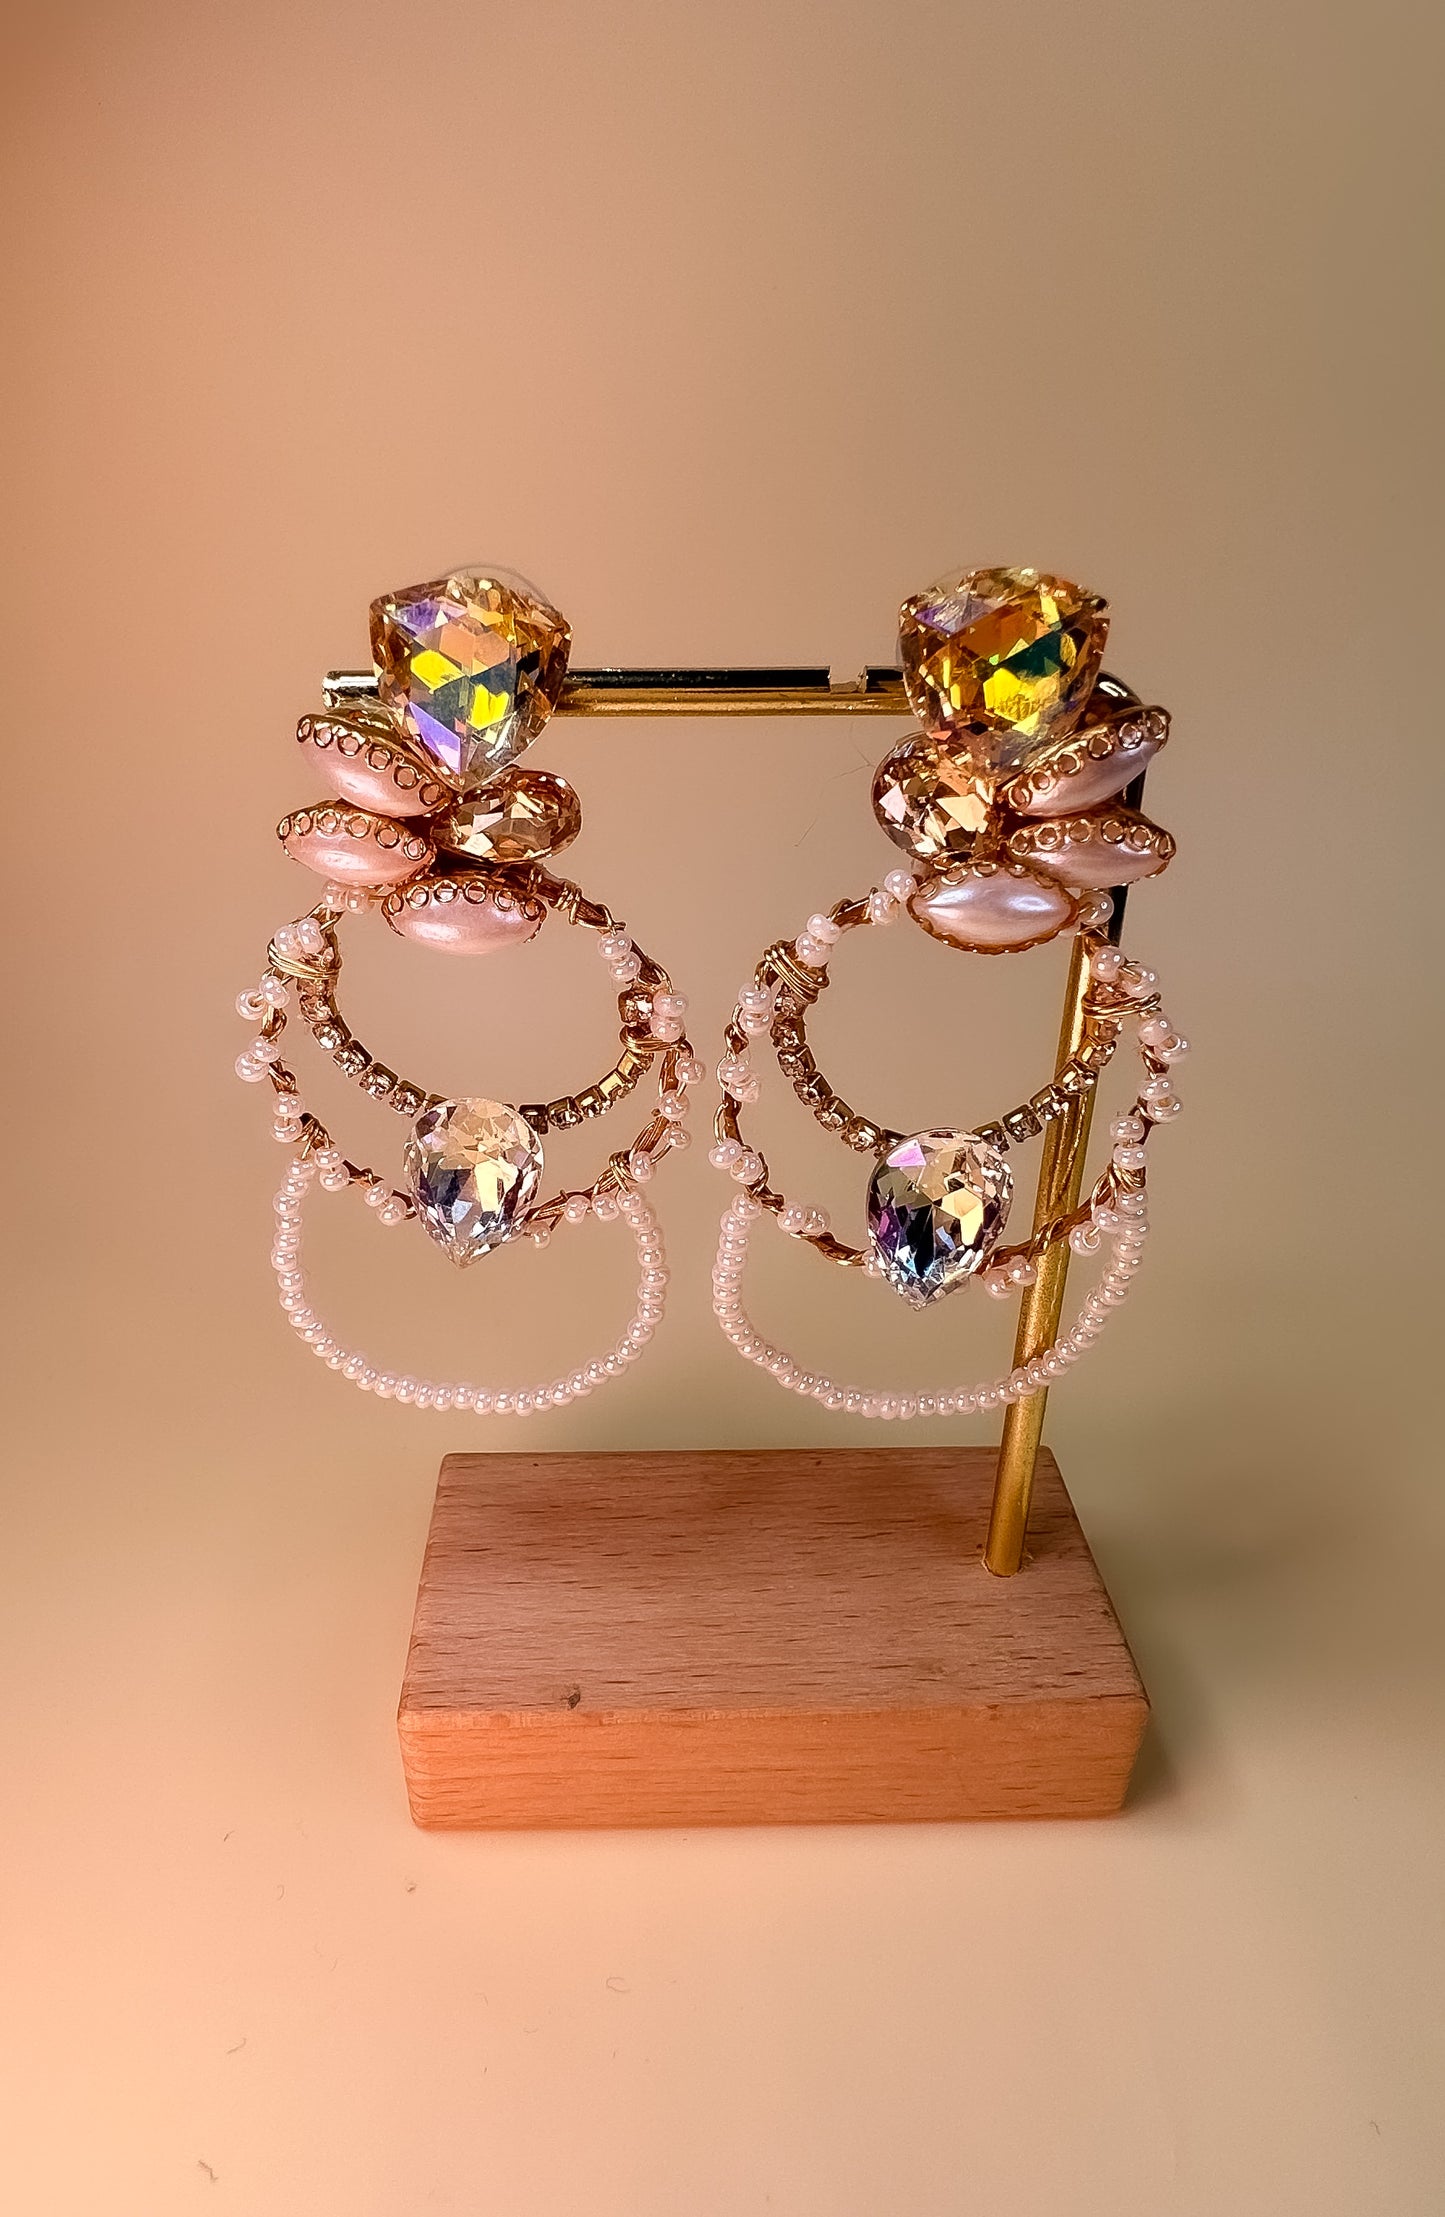 Boucles d'oreilles de mariée uniques tissées à la main avec miyuki japonais et cristaux.